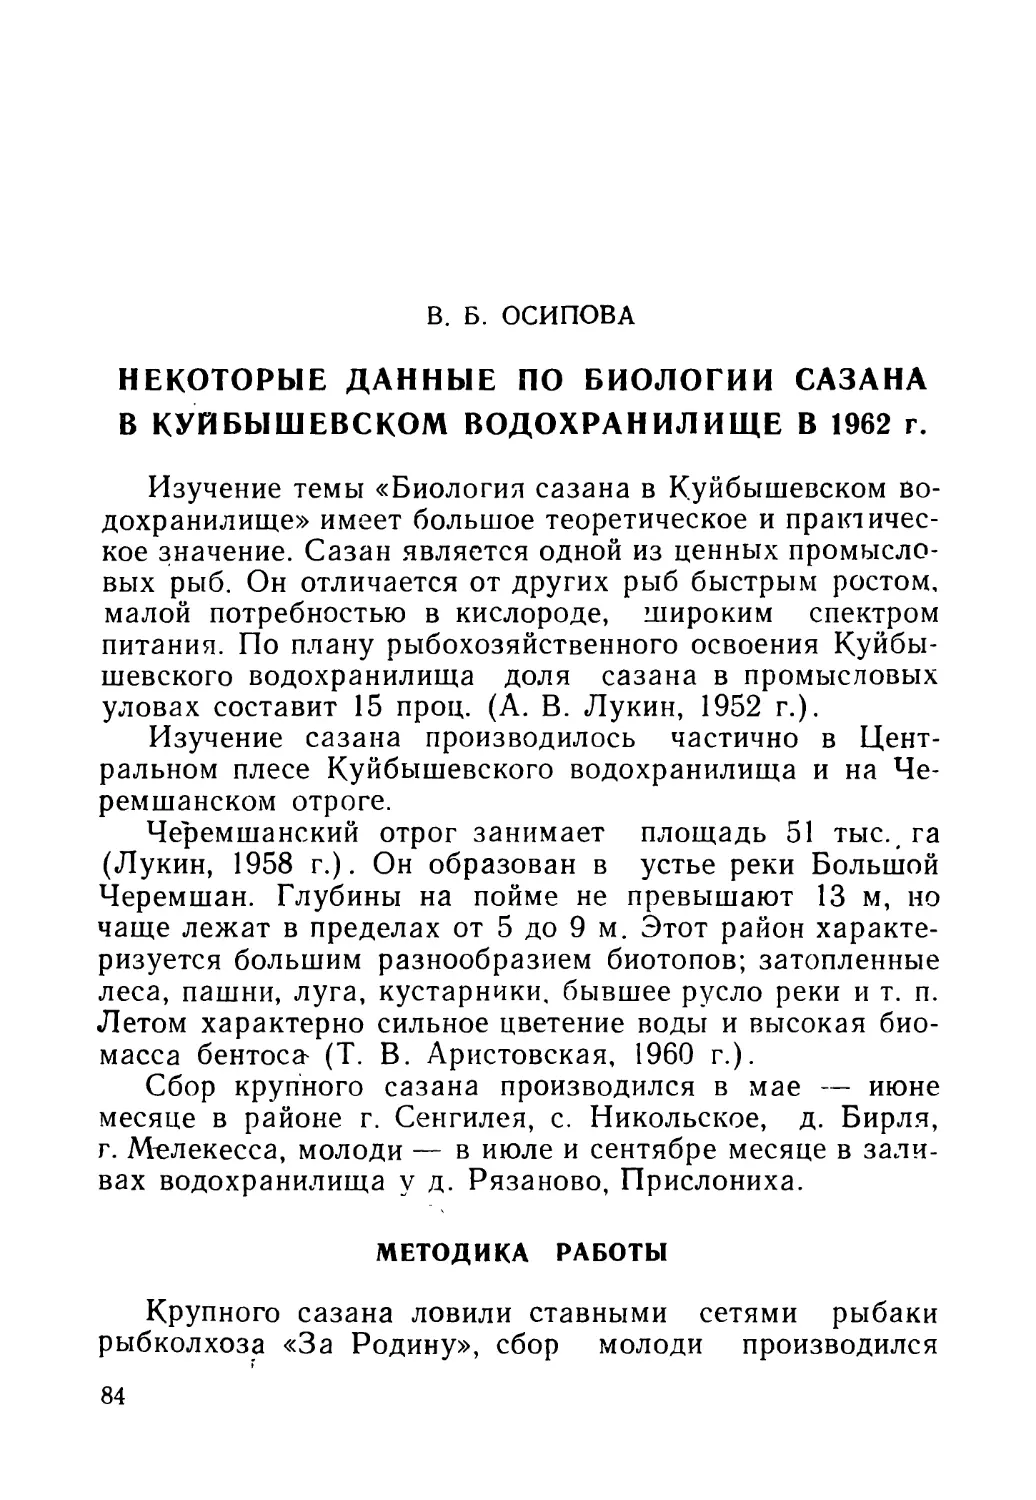 В. Б. ОСИПОВА. Некоторые данные по биологии сазана в Куйбышевском водохранилище в 1962 г.